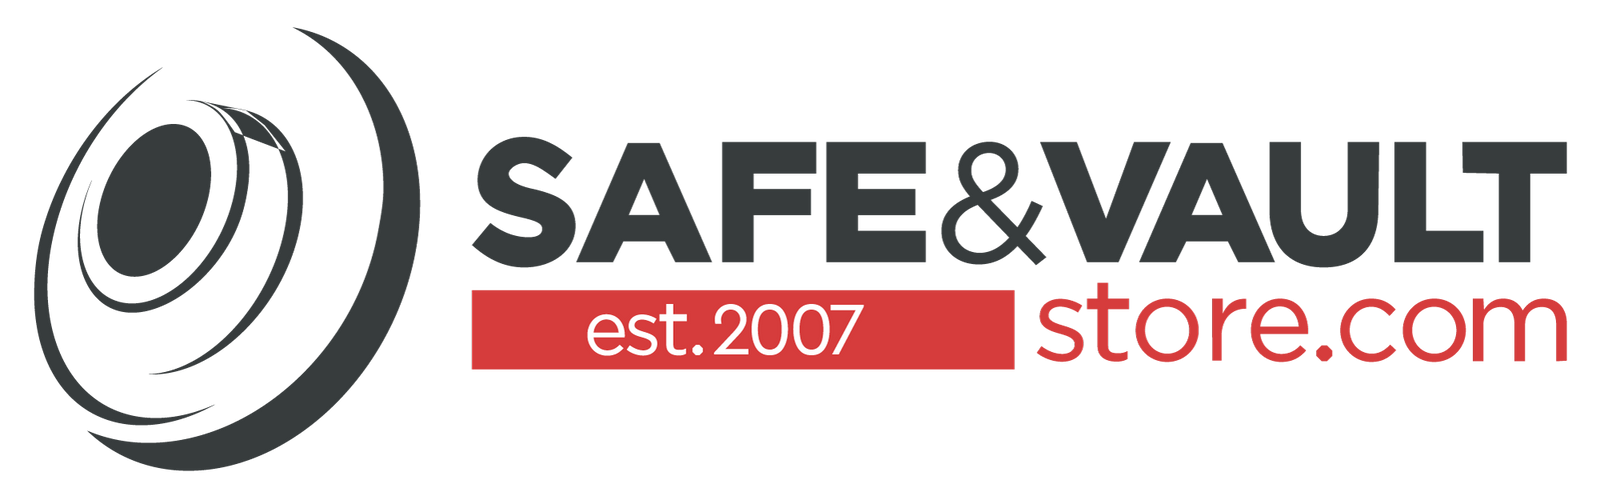 Safe & Vault Store.com Logo